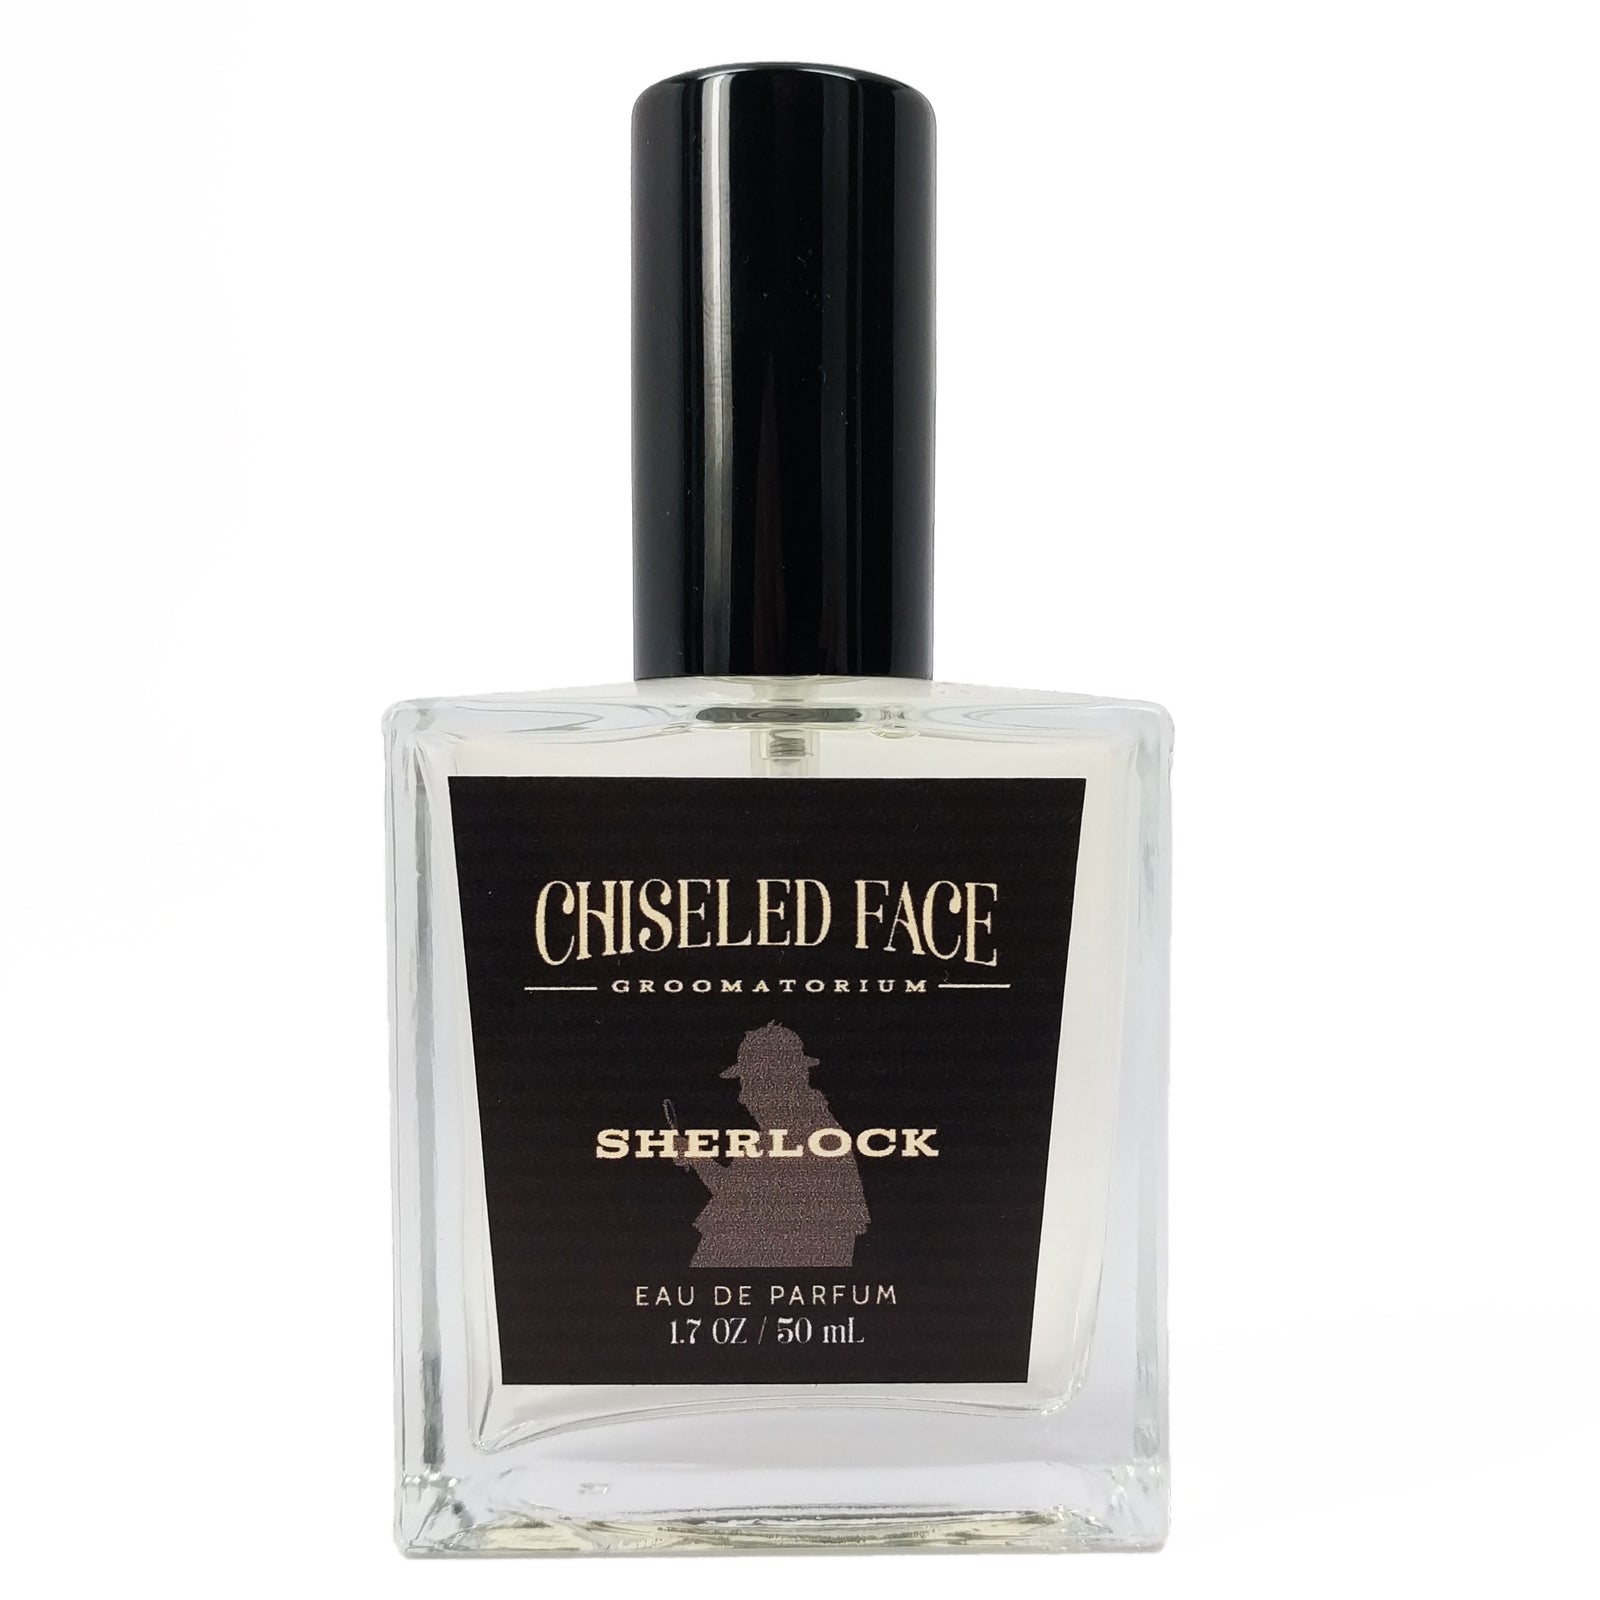 Chiseled Face - Sherlock - Eau de Parfum EDP Cologne